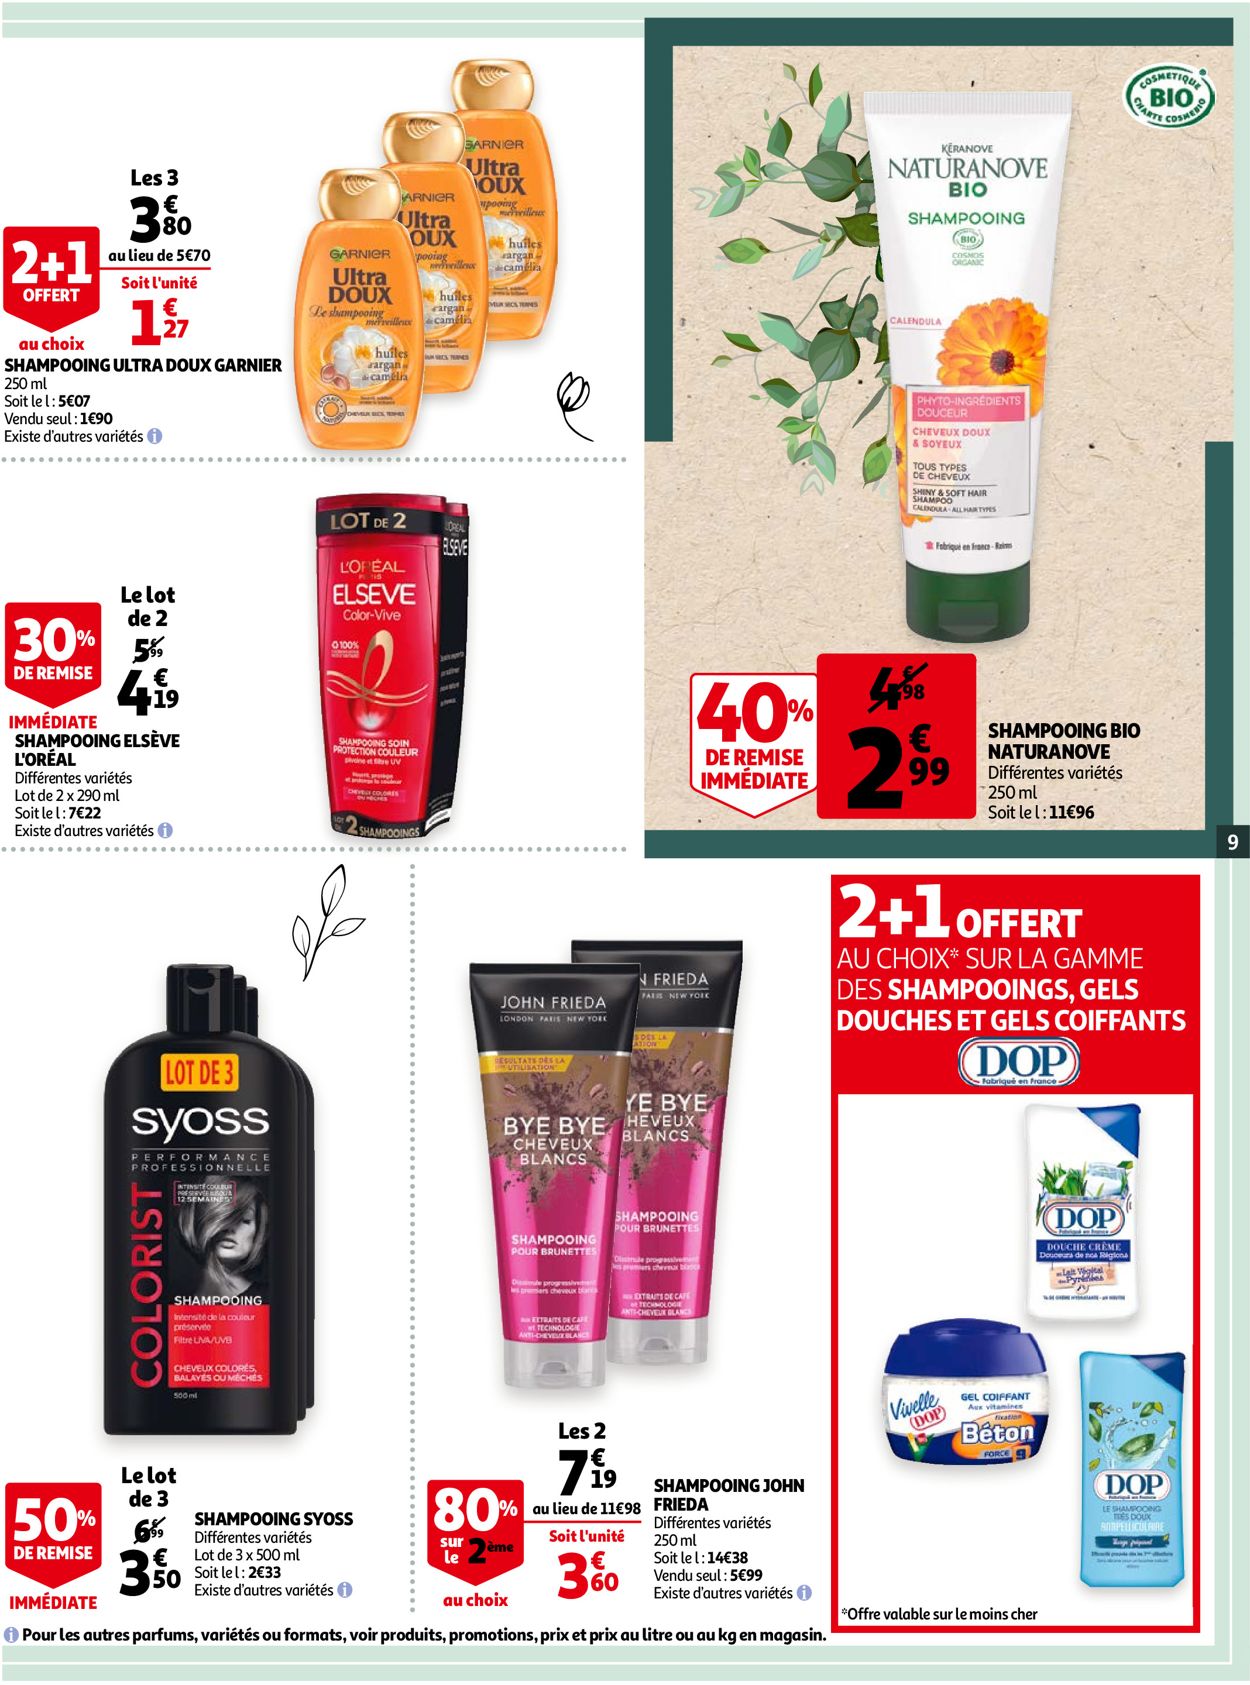 Auchan Special Soin et Detox 2021 Catalogue - 13.01-26.01.2021 (Page 9)